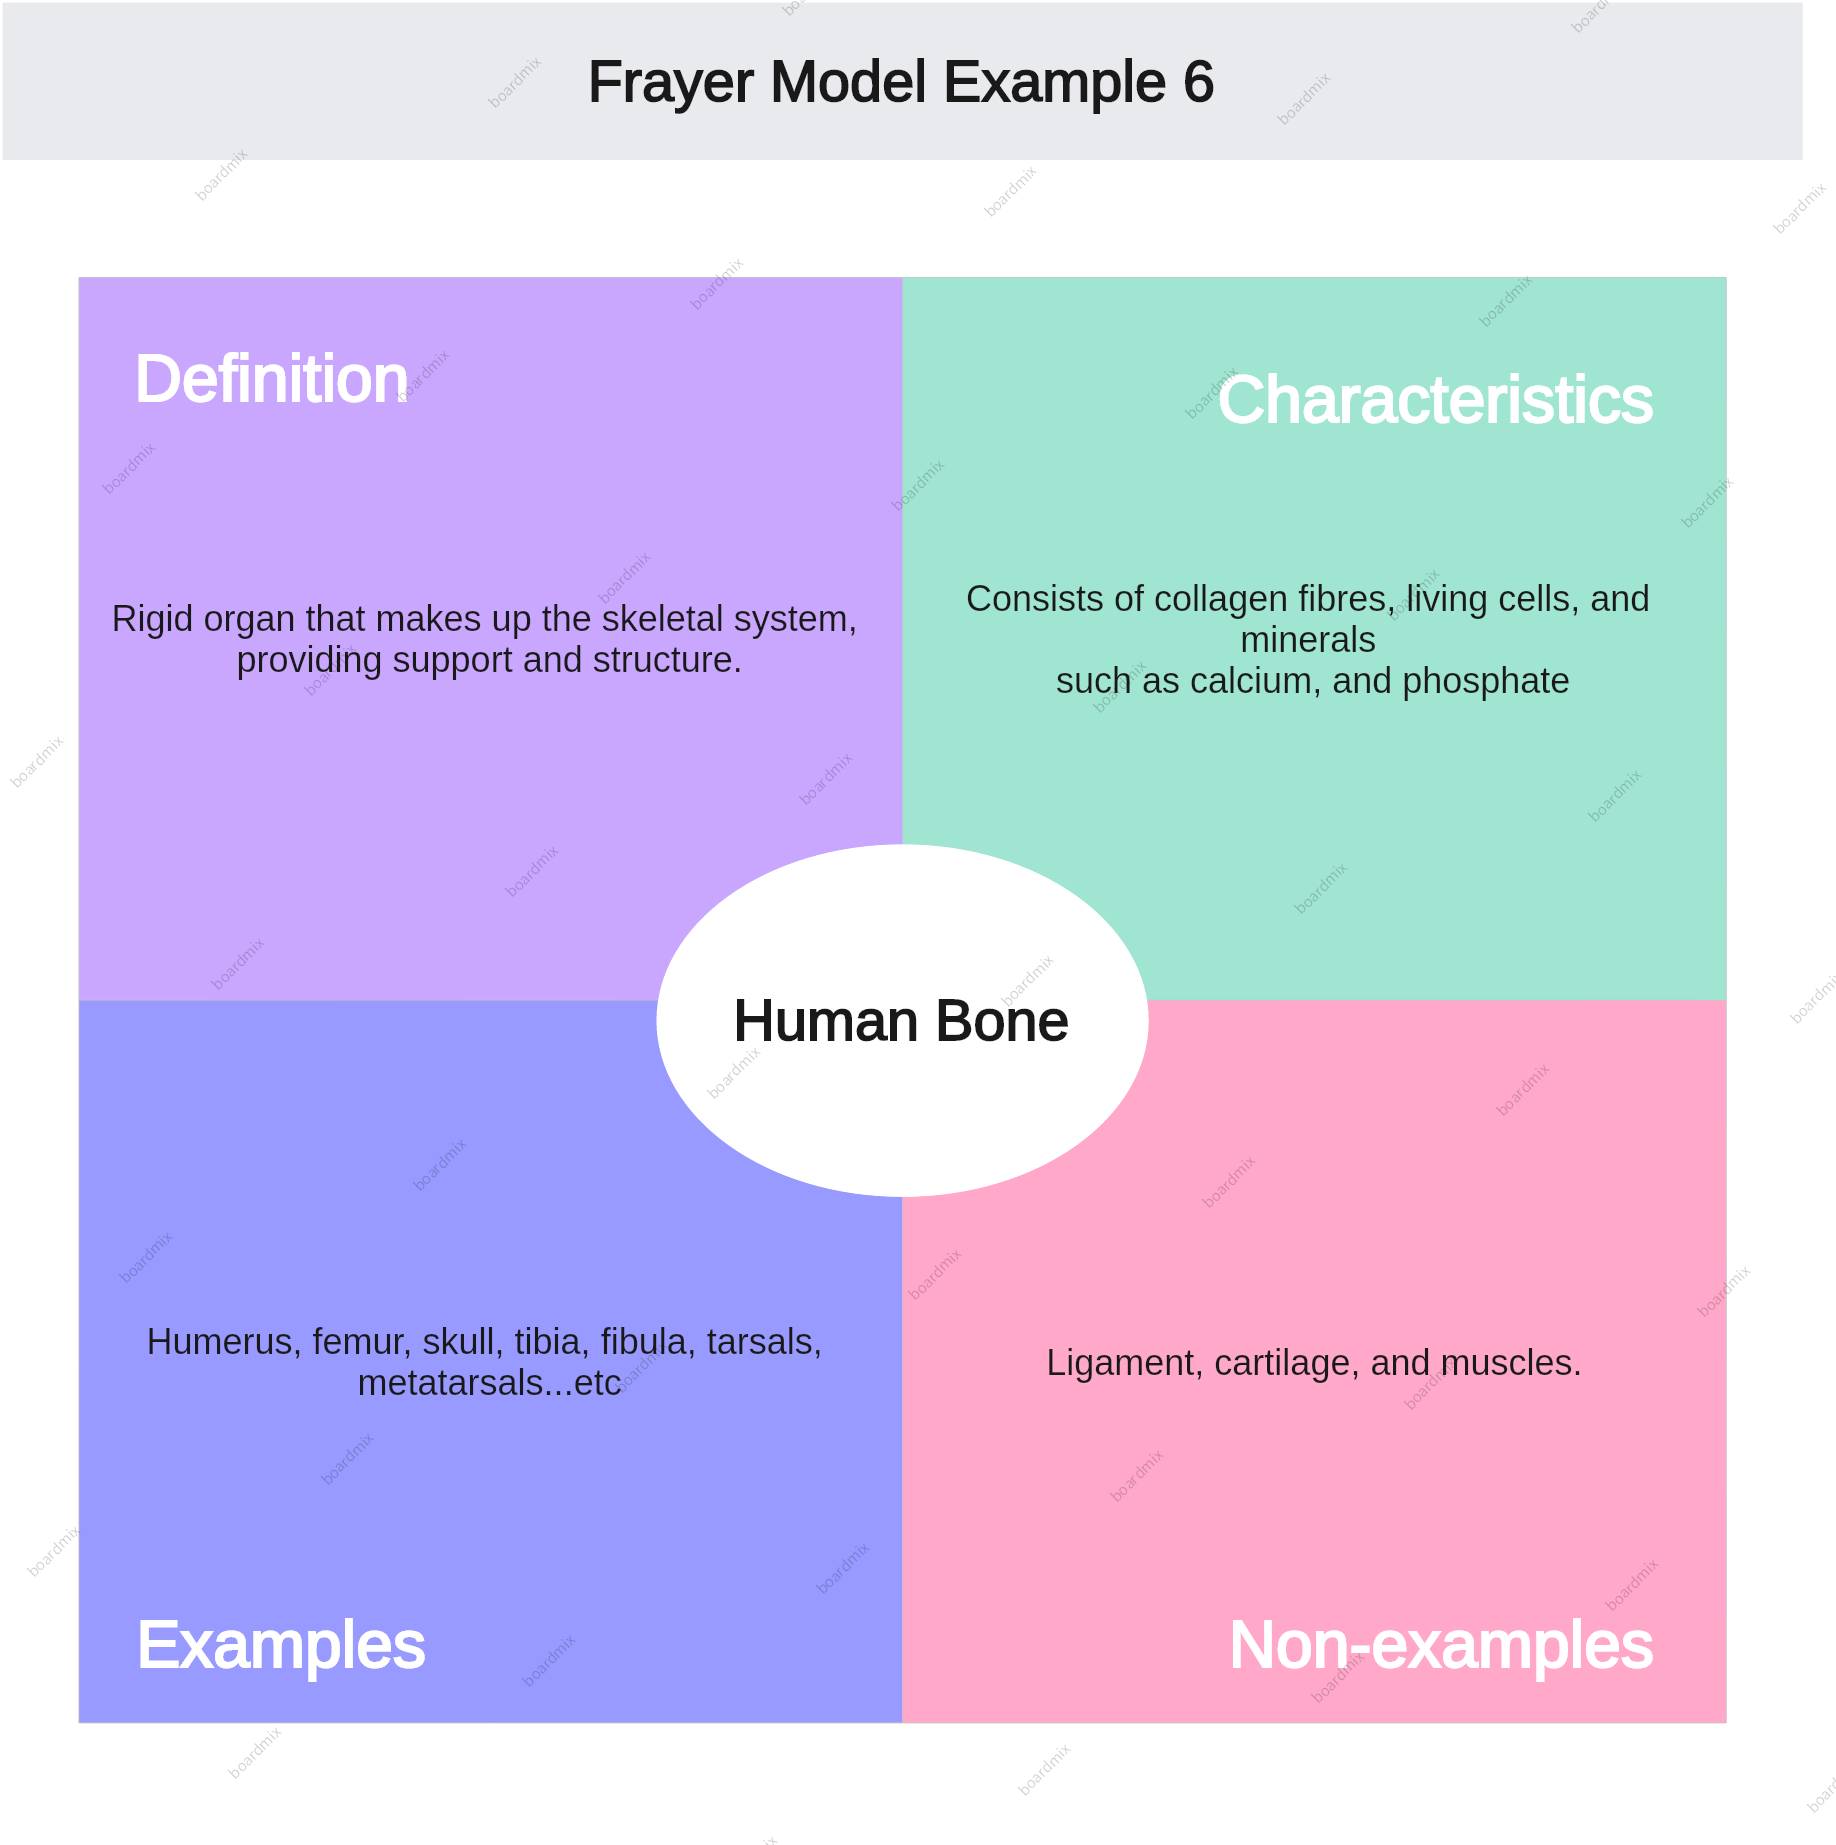 frayer-model-example-6